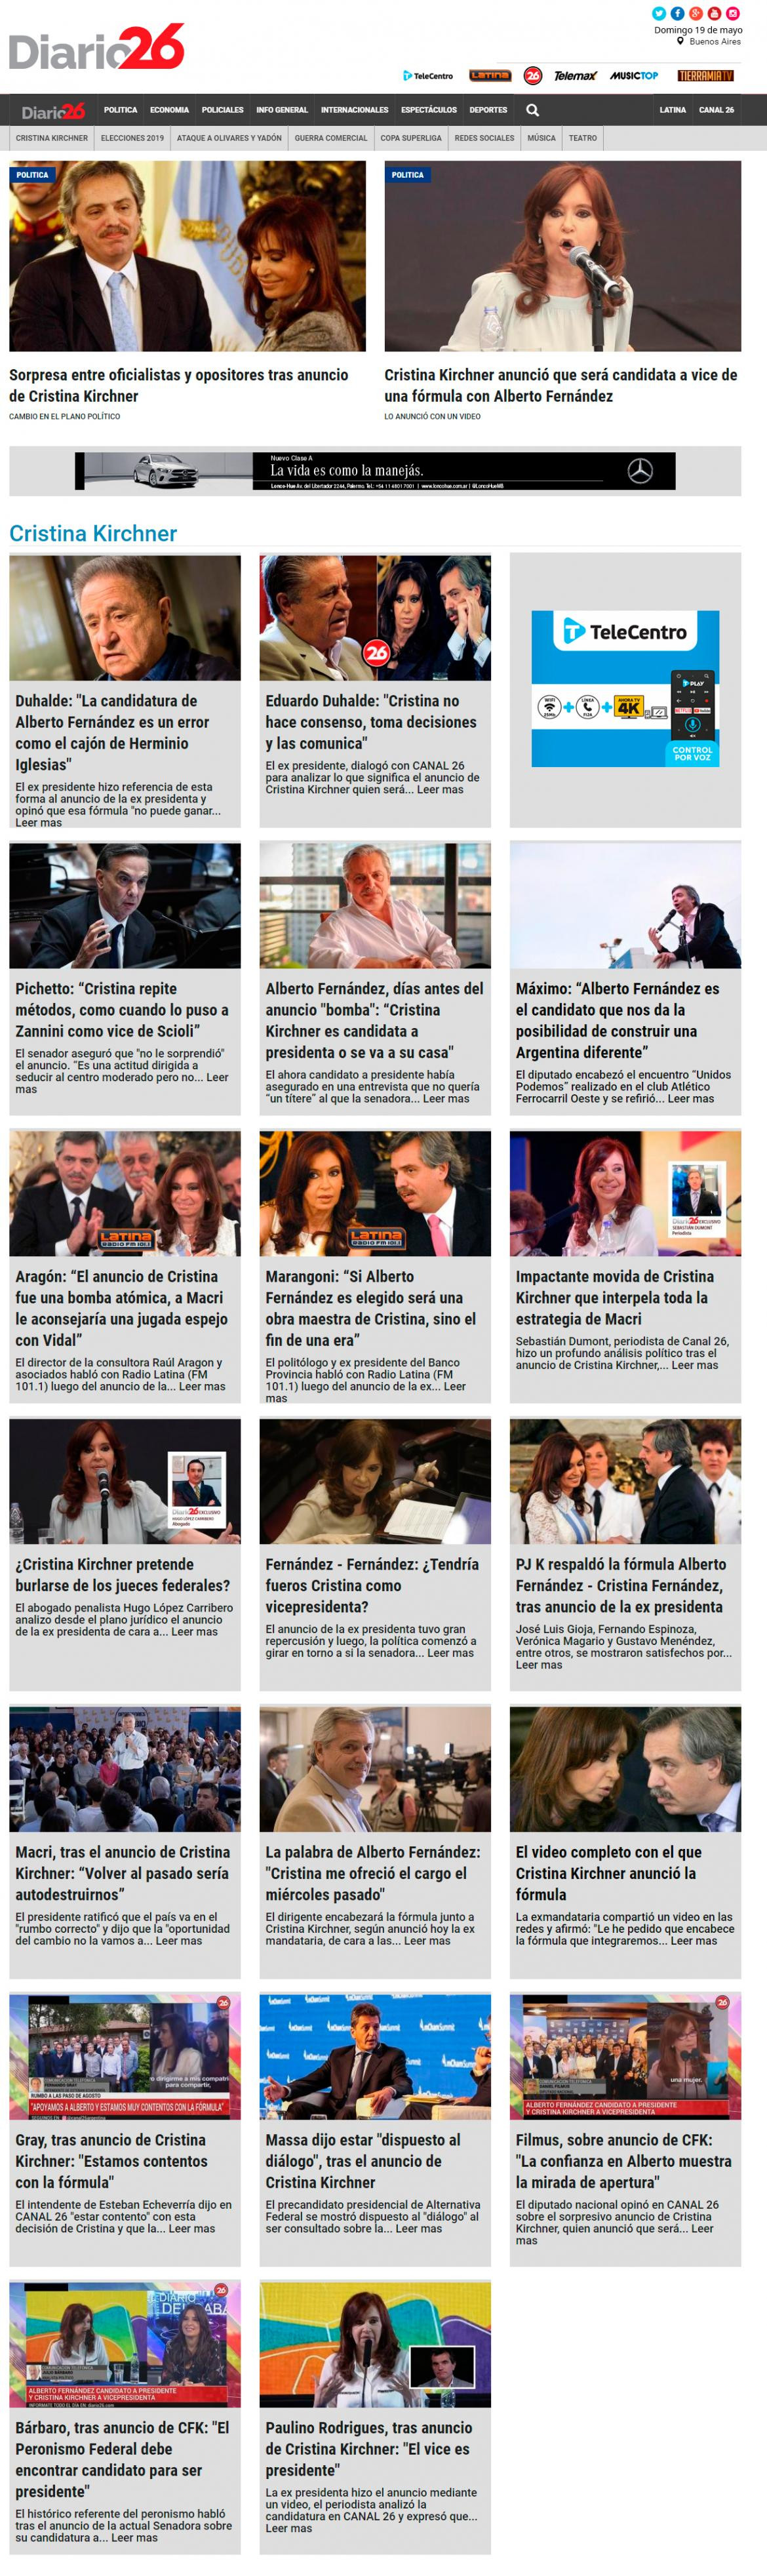 Tapas de diarios - Diario 26 domingo 19-05-19